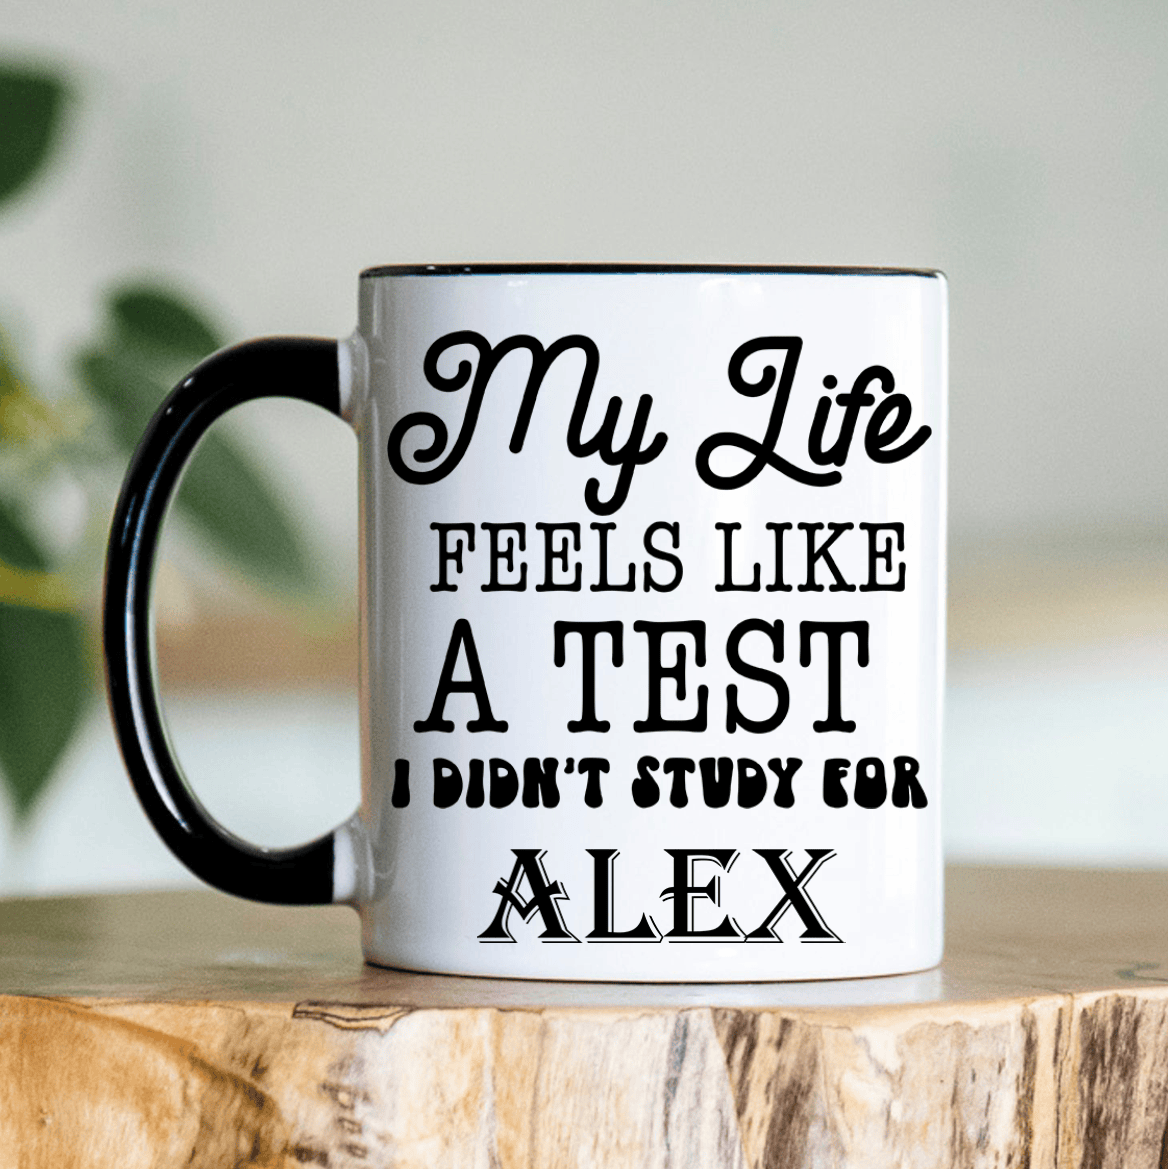 Black Funny Coffee Mug With I Didnt Study Life Design